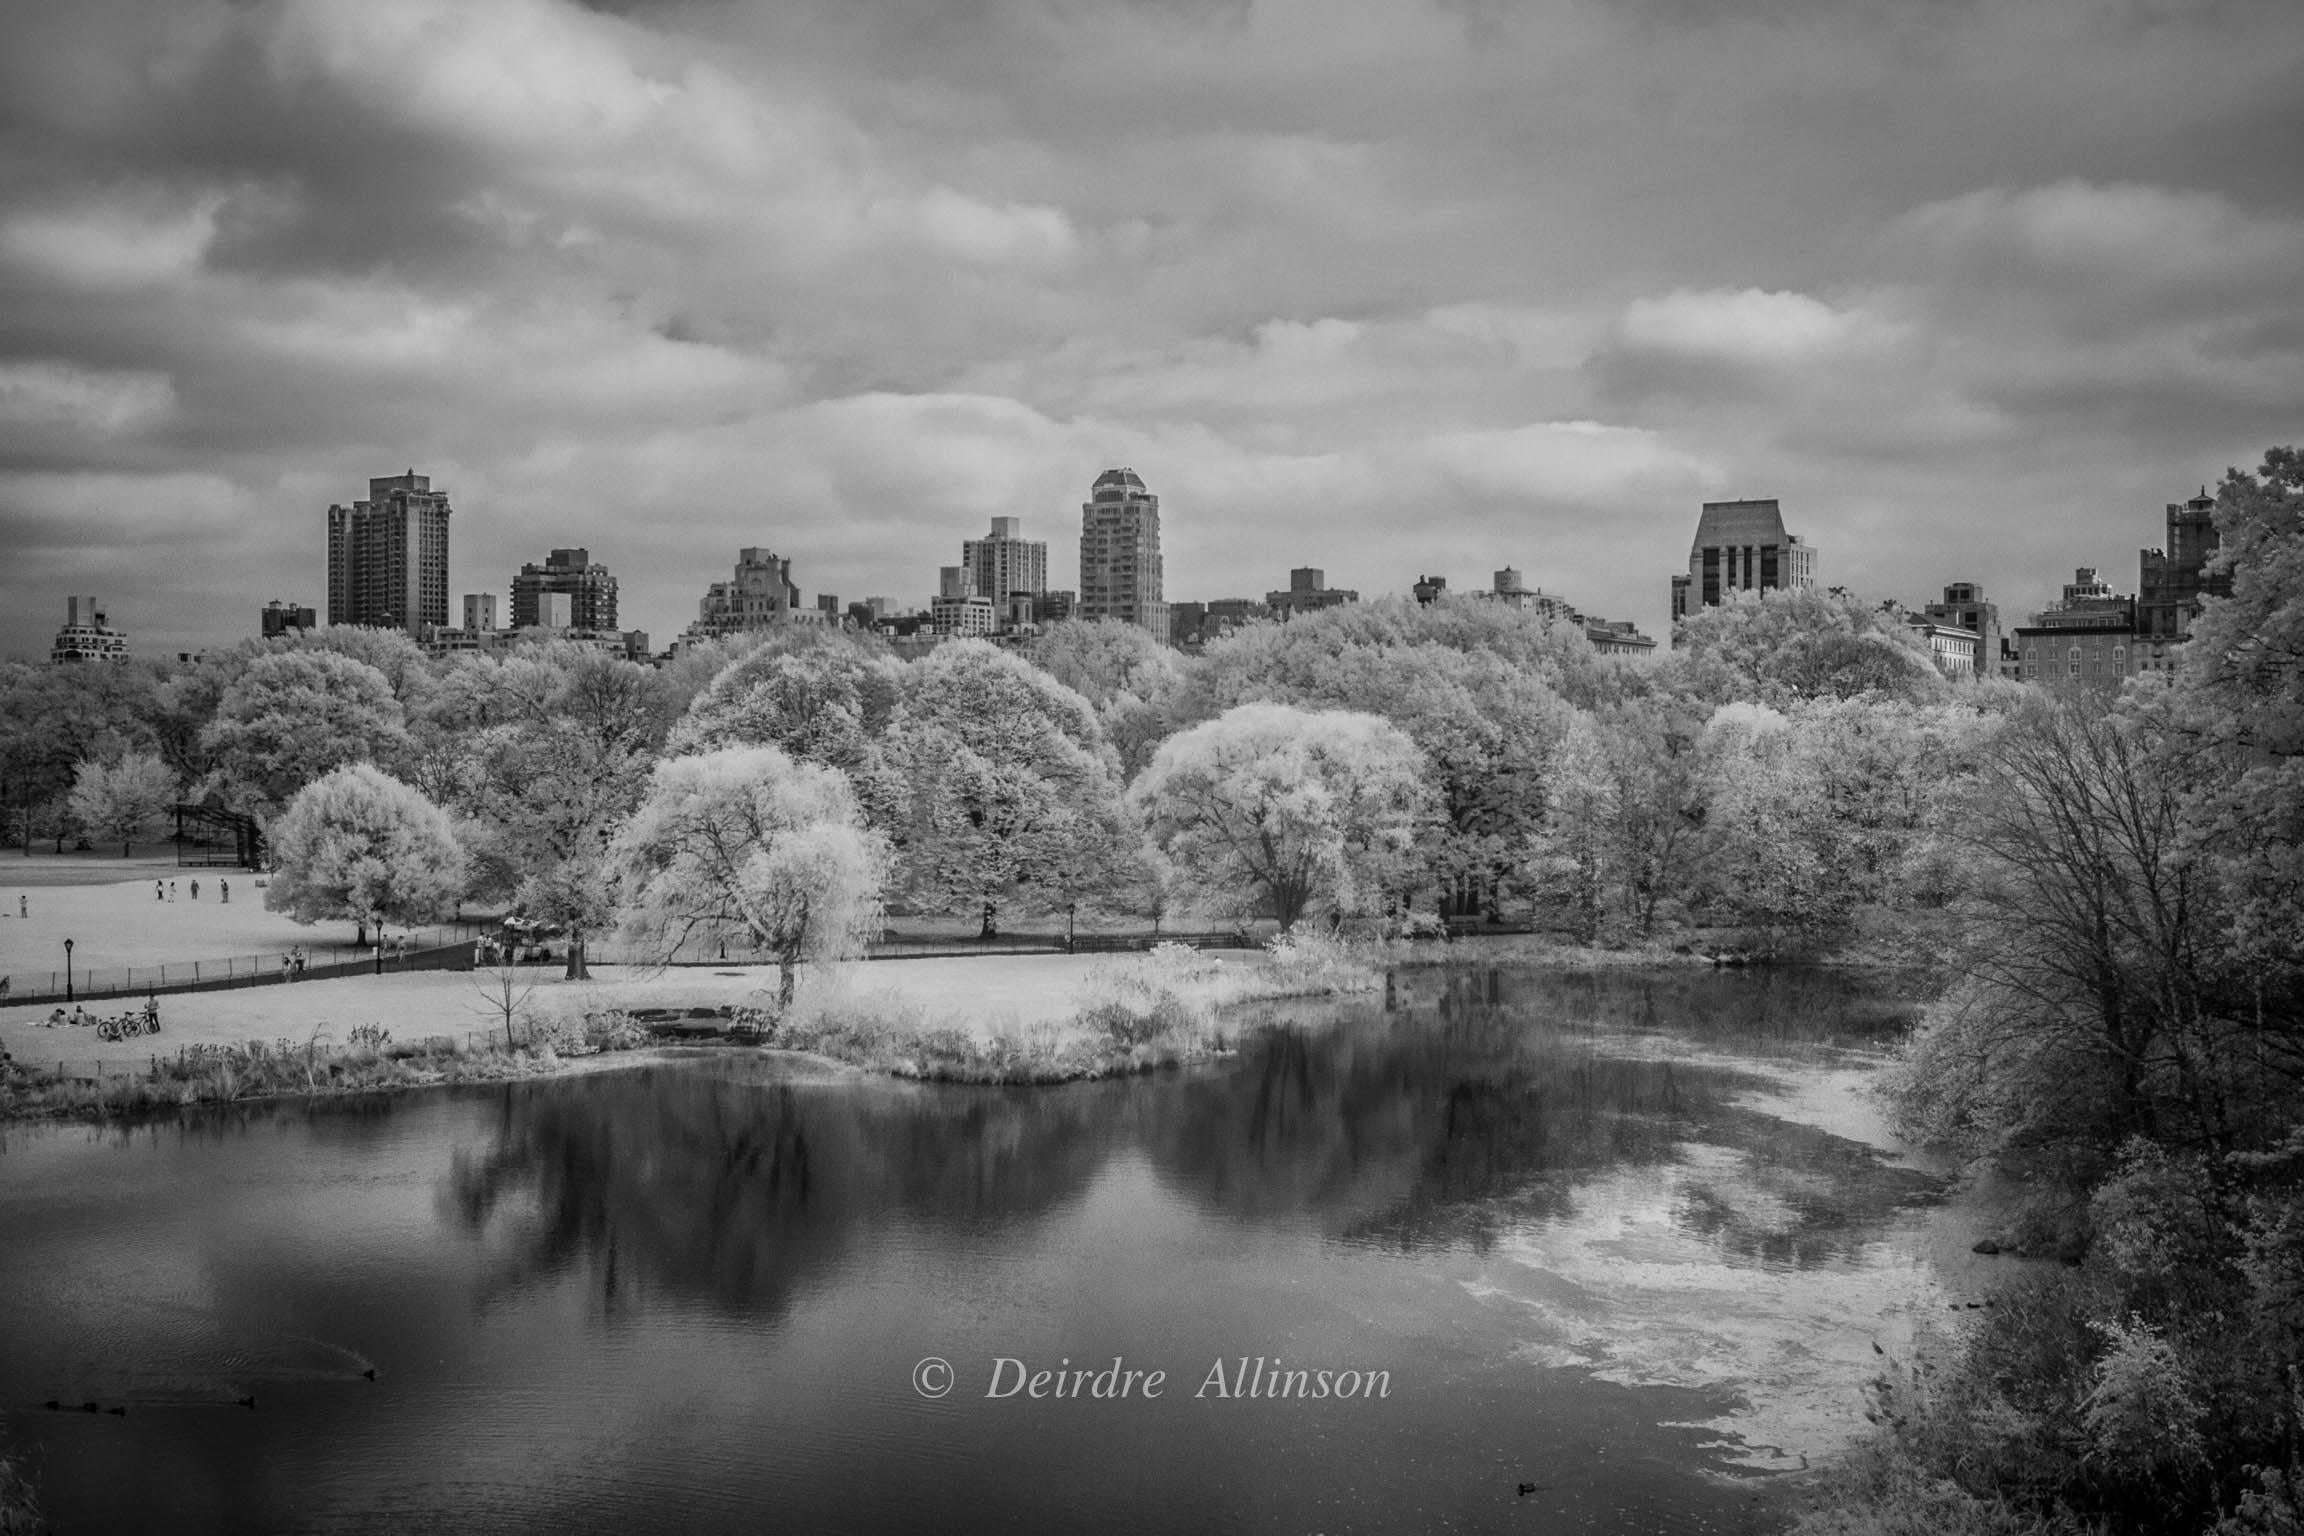 Deirdre Allinson Black and White Photograph - A Quiet Glimpse of Central Park